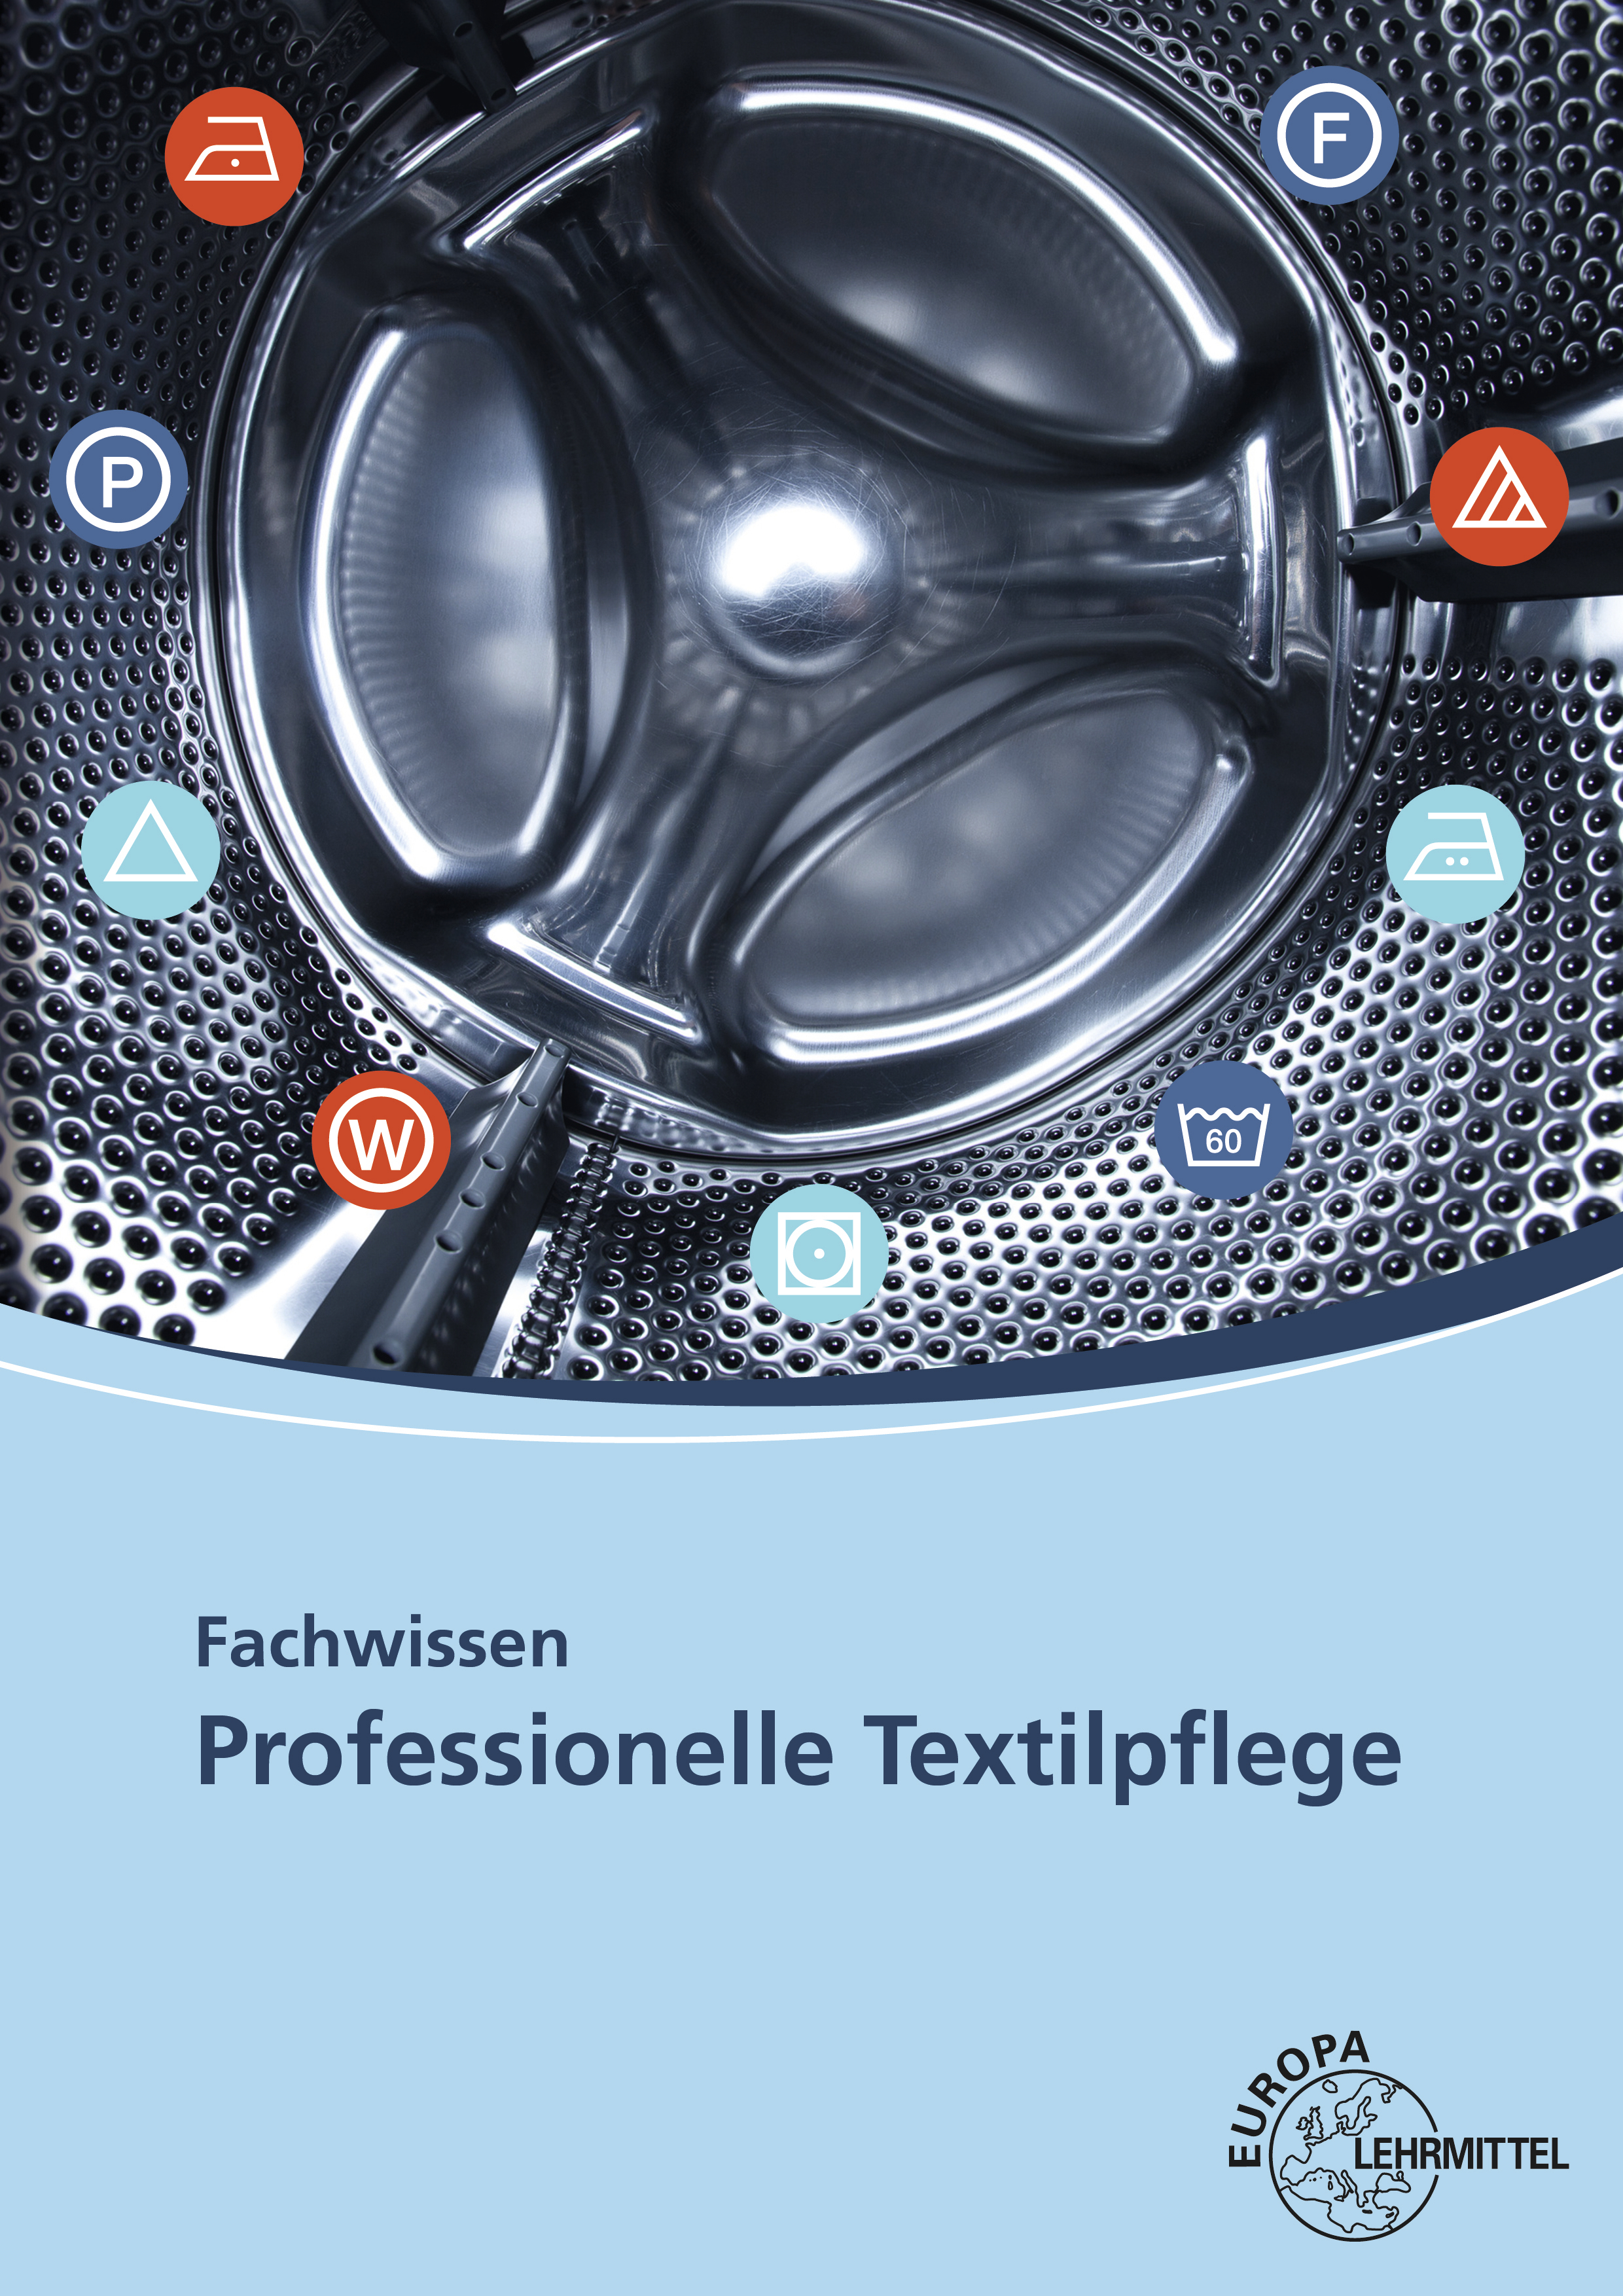 Fachwissen Professionelle Textilpflege